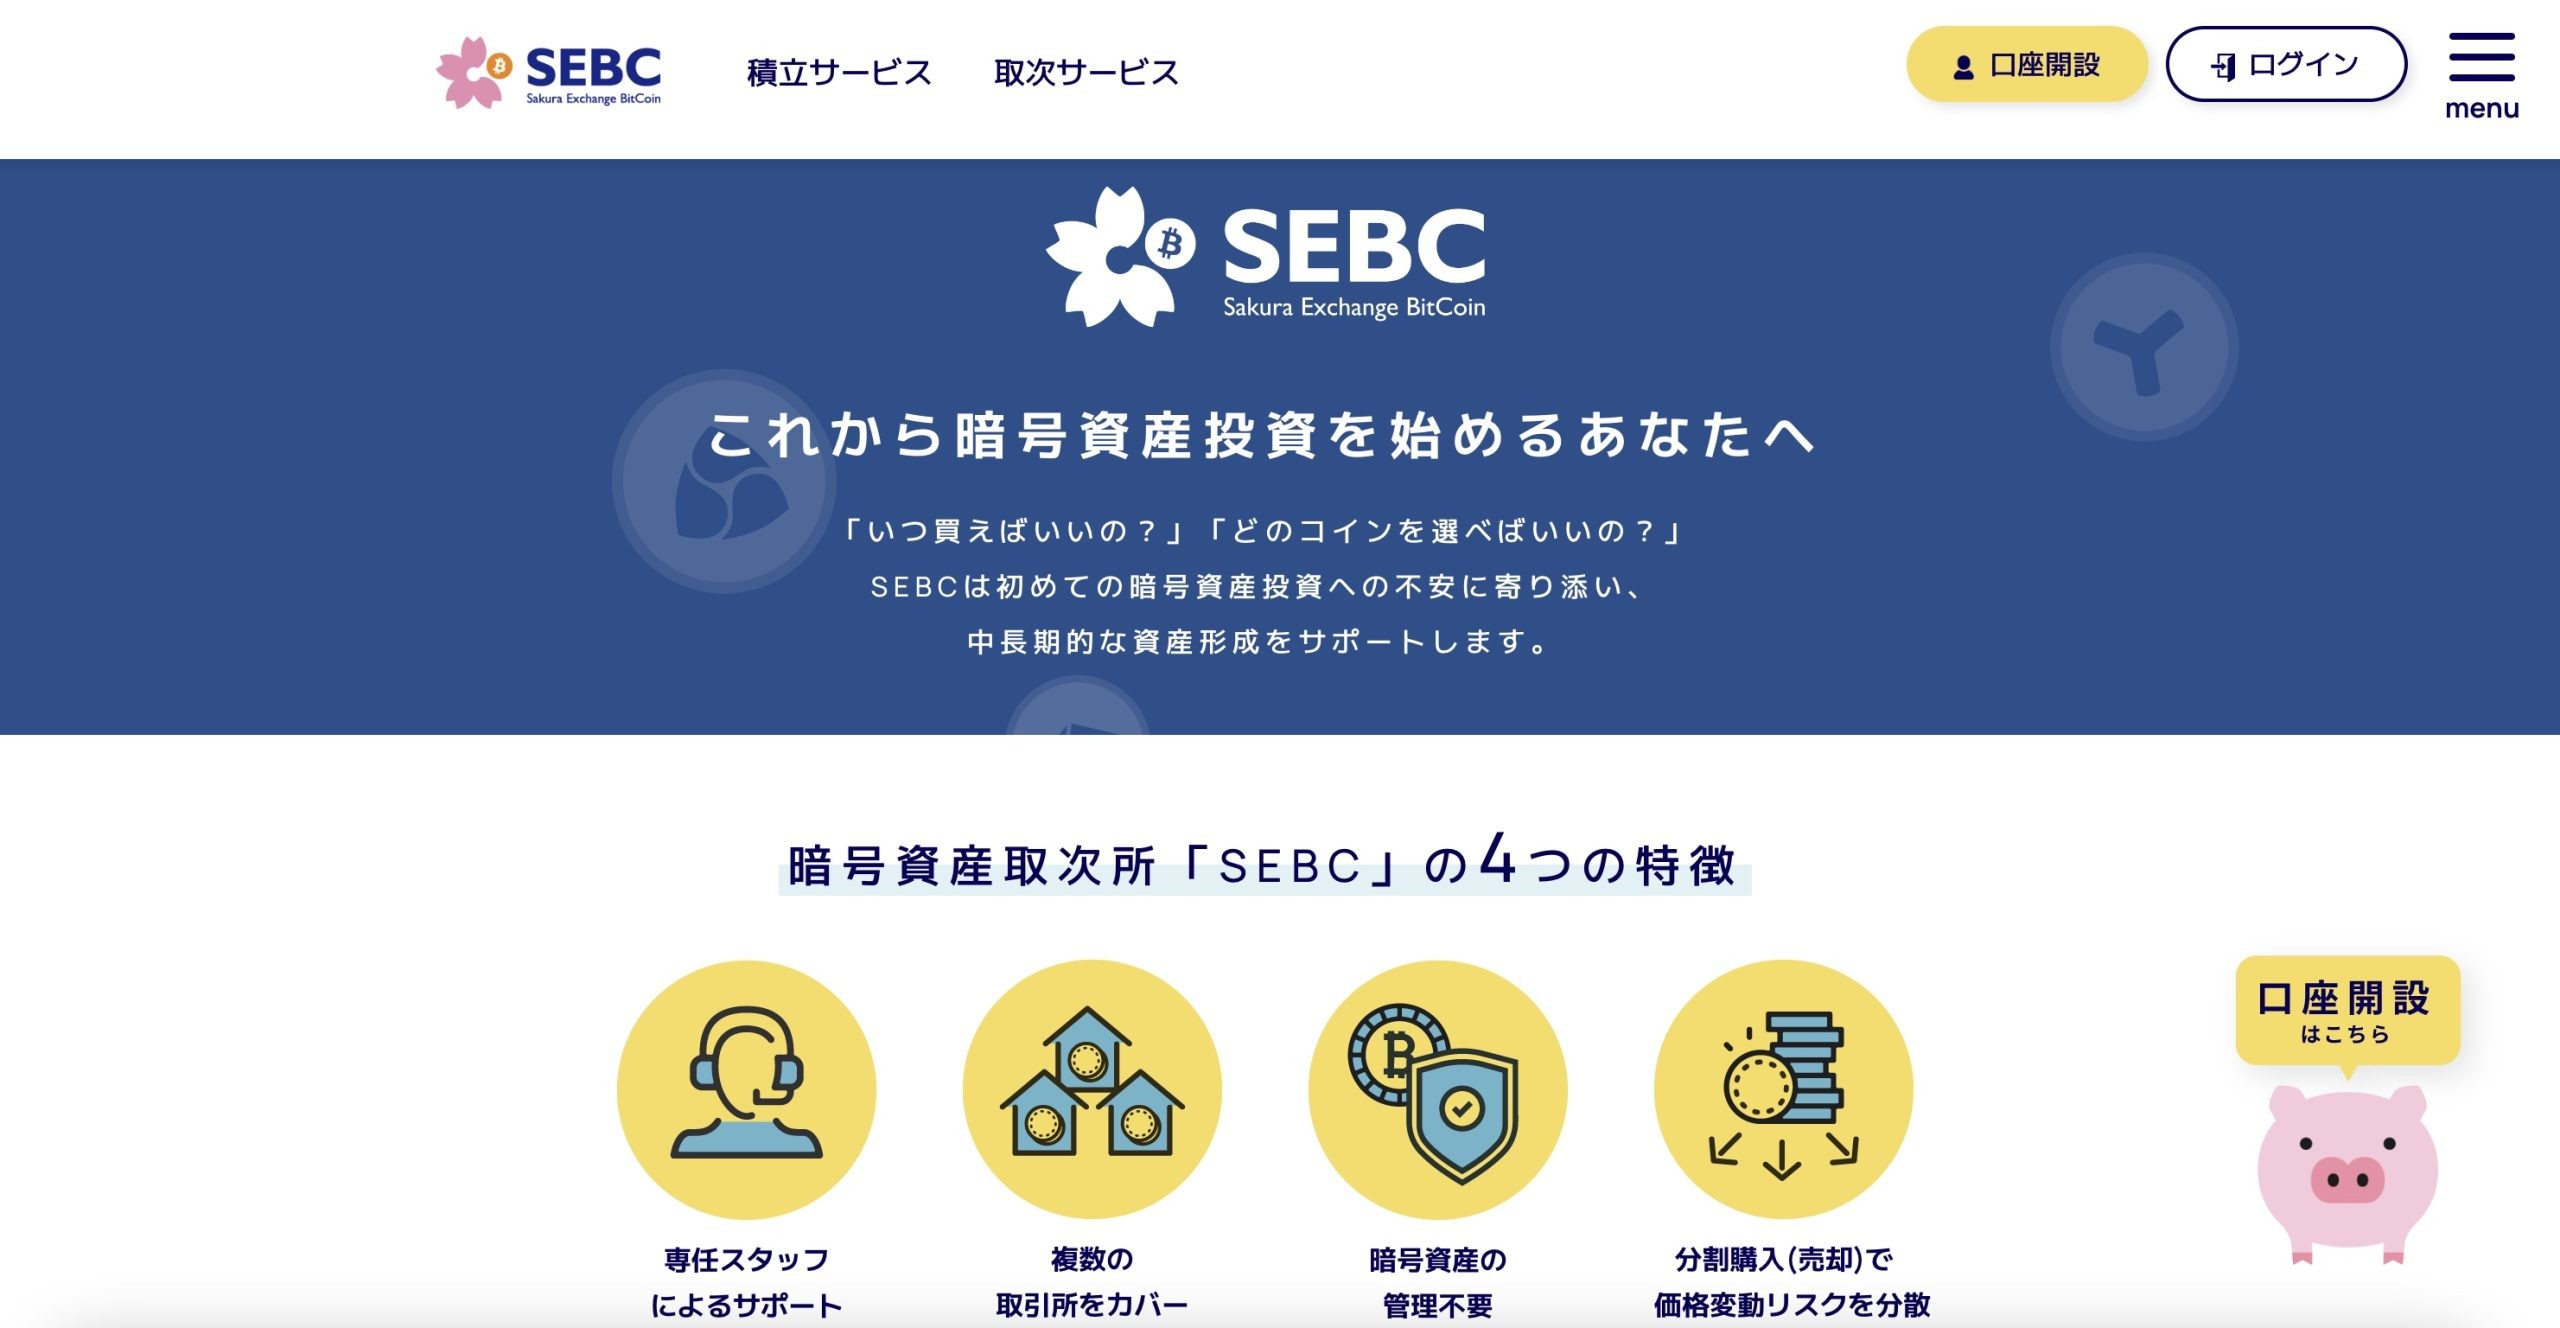 واجهة تطبيق منصة ساكورا (SEBC)